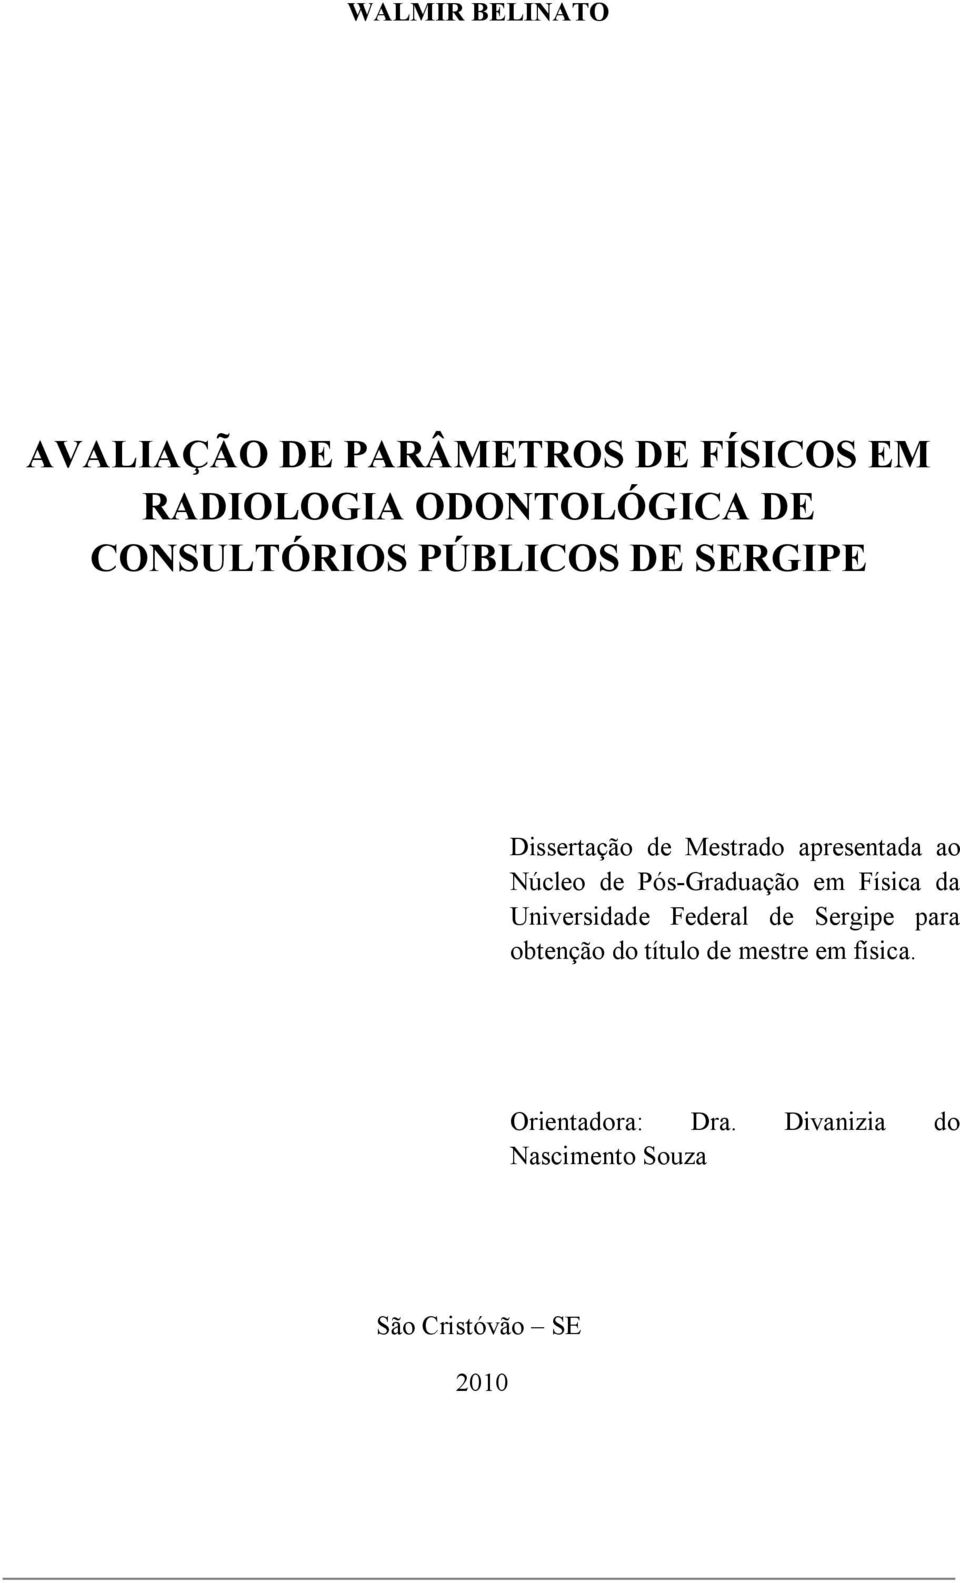 Pós-Graduação em Física da Universidade Federal de Sergipe para obtenção do título